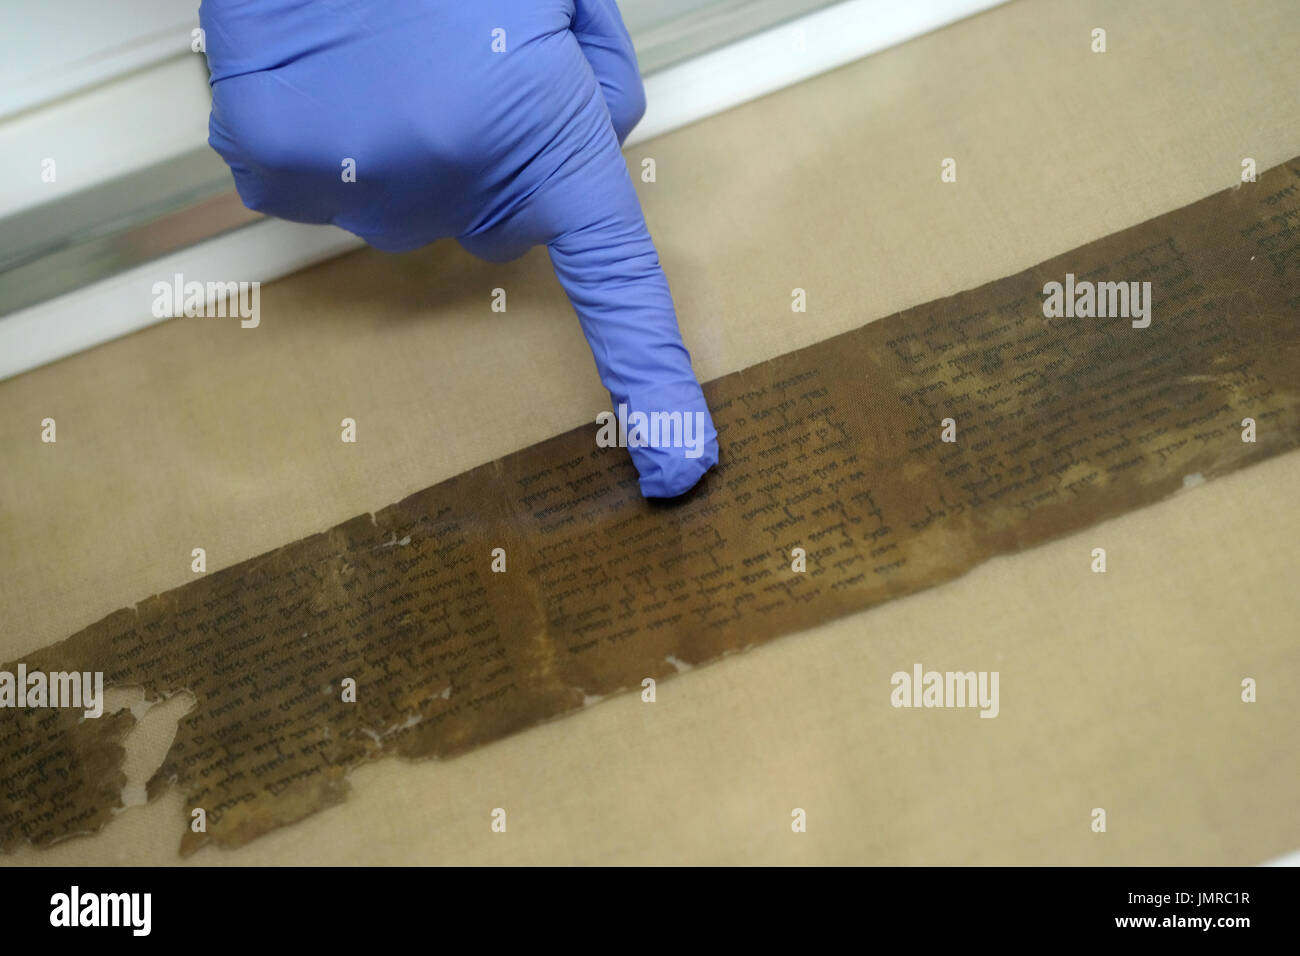 Un analyste de la conservation inspecte un fragment de deutéronome de la mer Morte Défilement écrit en hébreu trouvé dans les grottes de Qumran dans le Laboratoire de préservation de l'Autorité israélienne des Antiquités à Israël Musée de Jérusalem Israël Banque D'Images